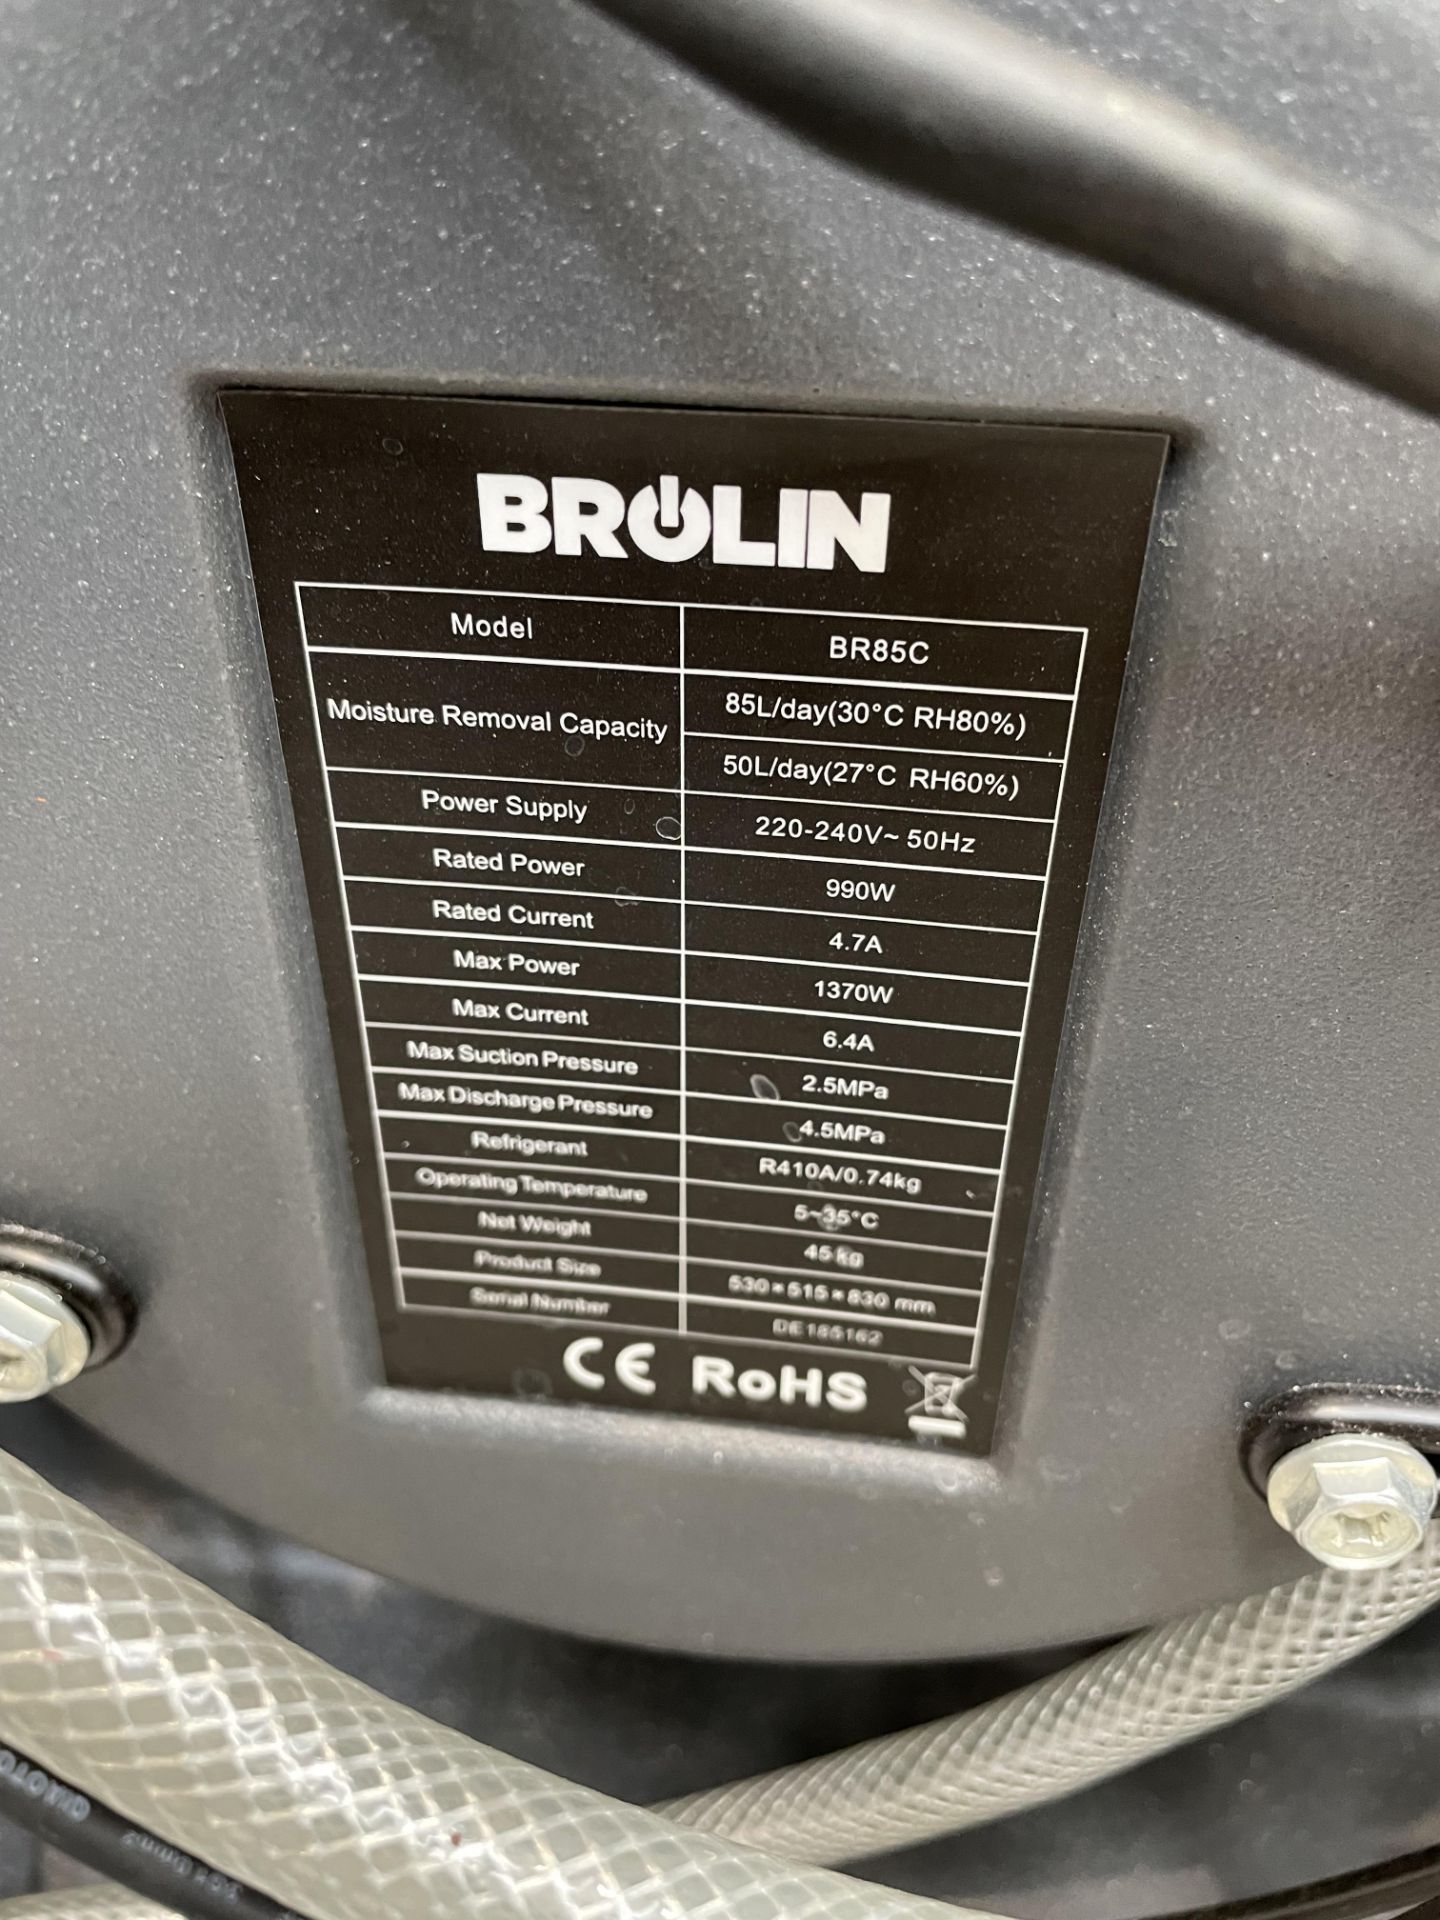 Brolin BR85C Portable Dehumidifier Serial No. DE165162 - Image 2 of 2